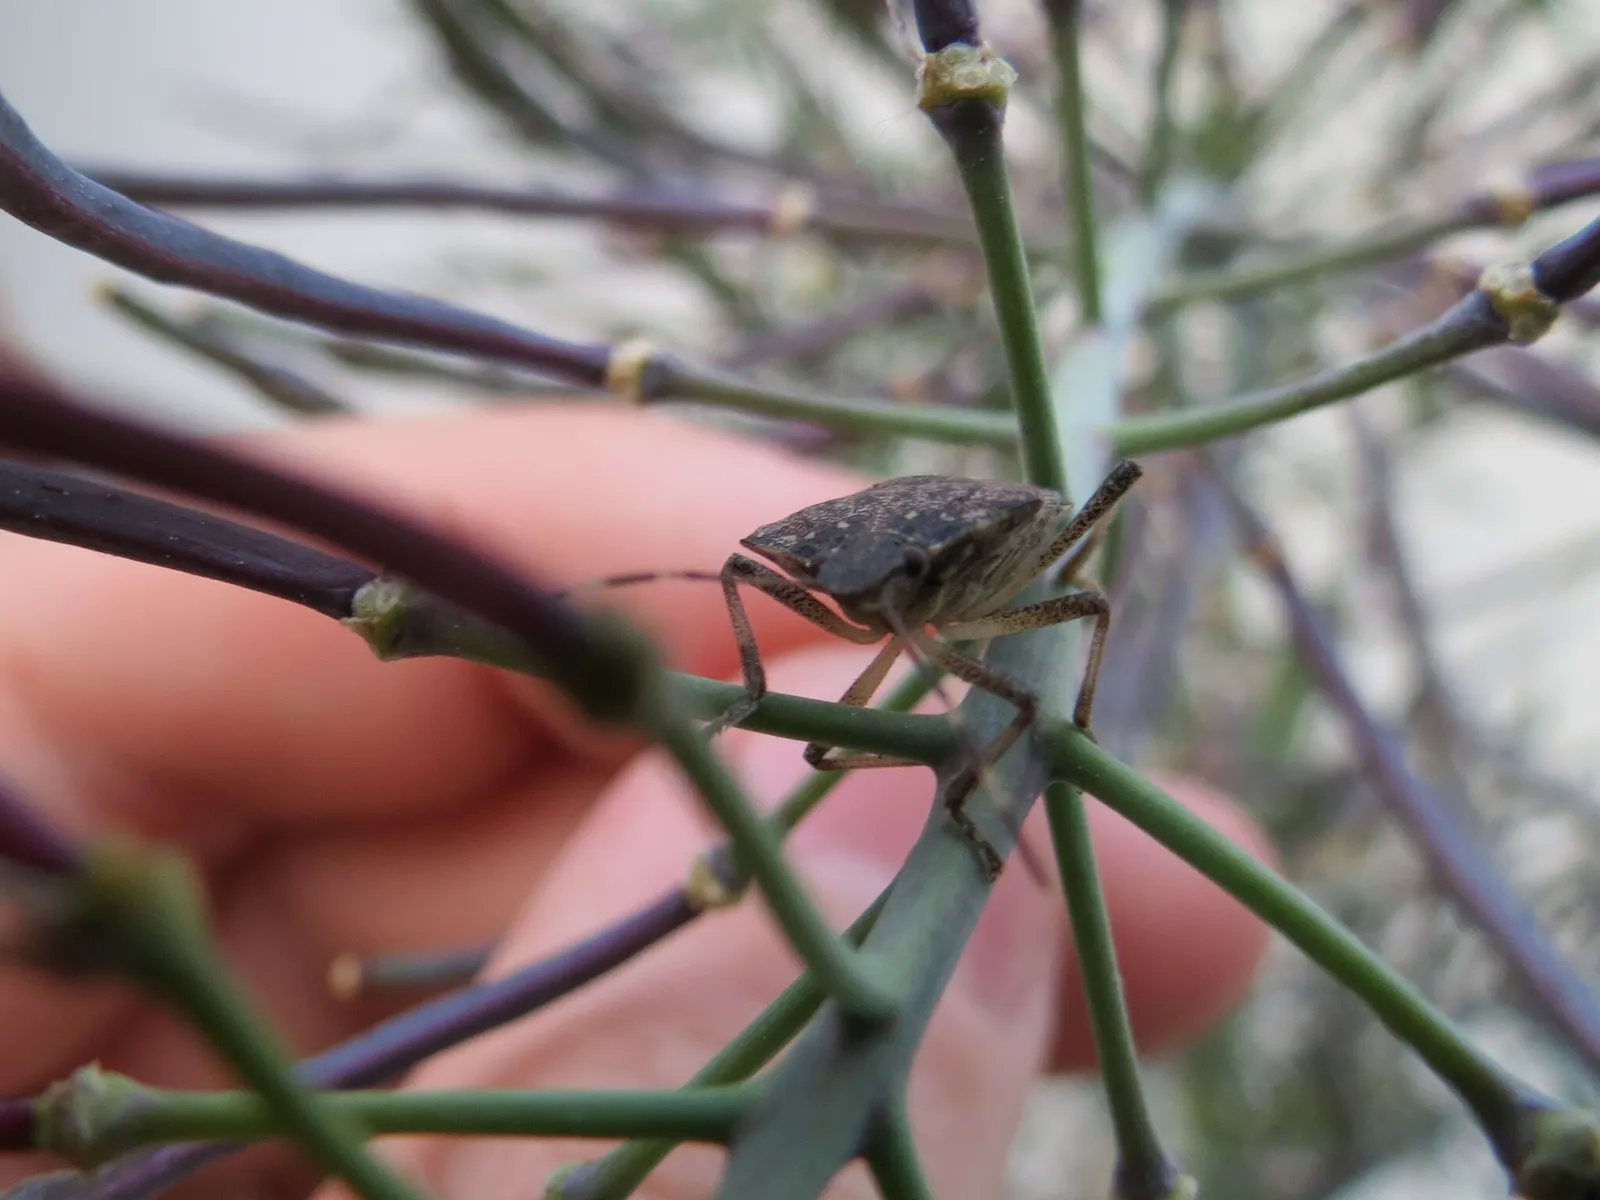 Ein Insekt auf einer abgeblühten Kohlpflanze guckt in die Kamera